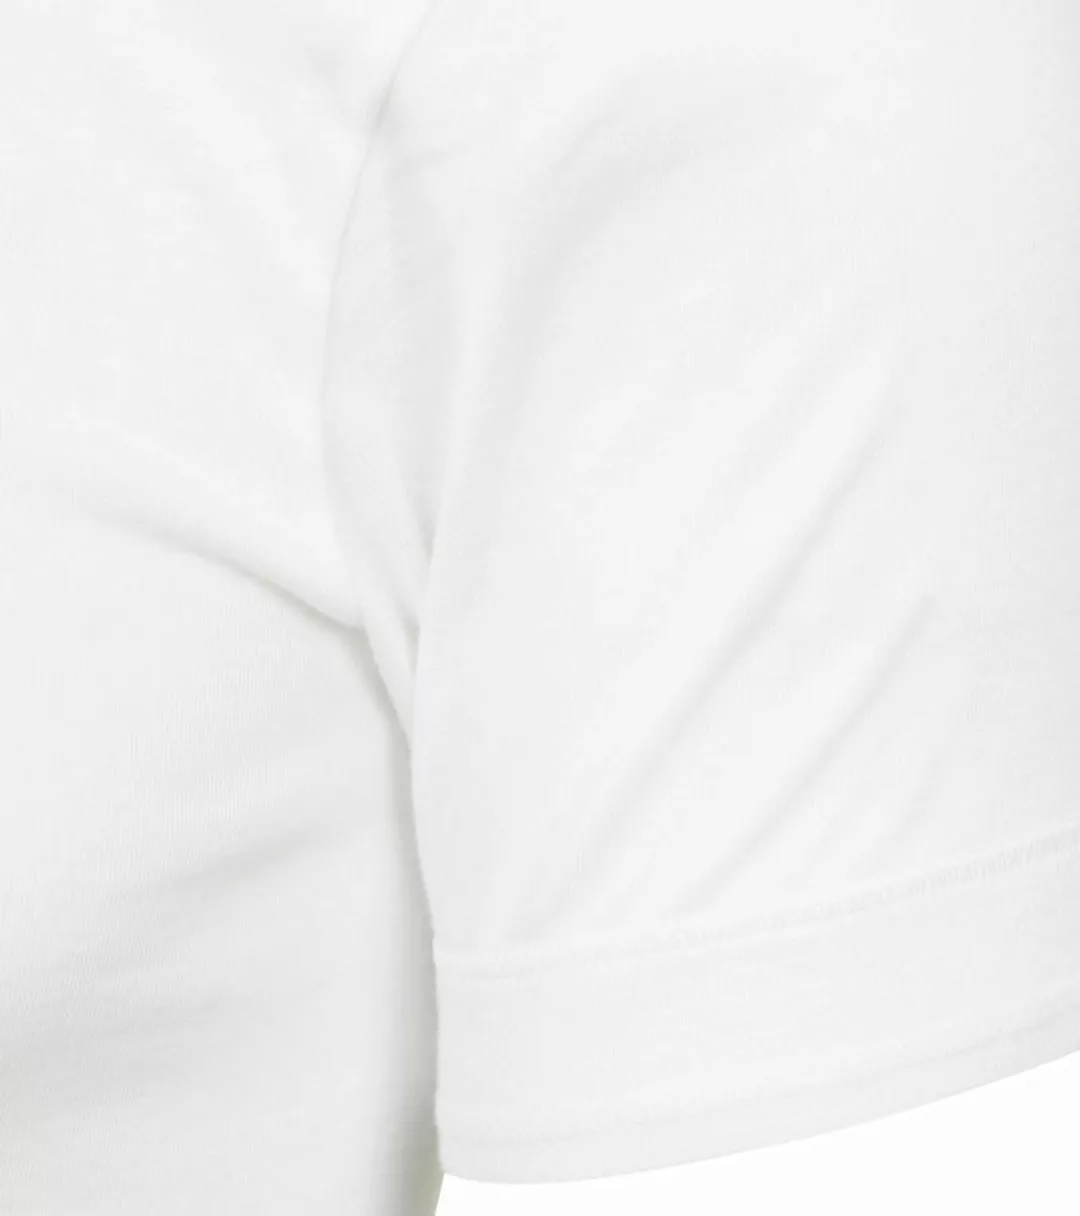 Mey Noblesse O-Ausschnitt T-Shirt Weiß - Größe 4XL günstig online kaufen